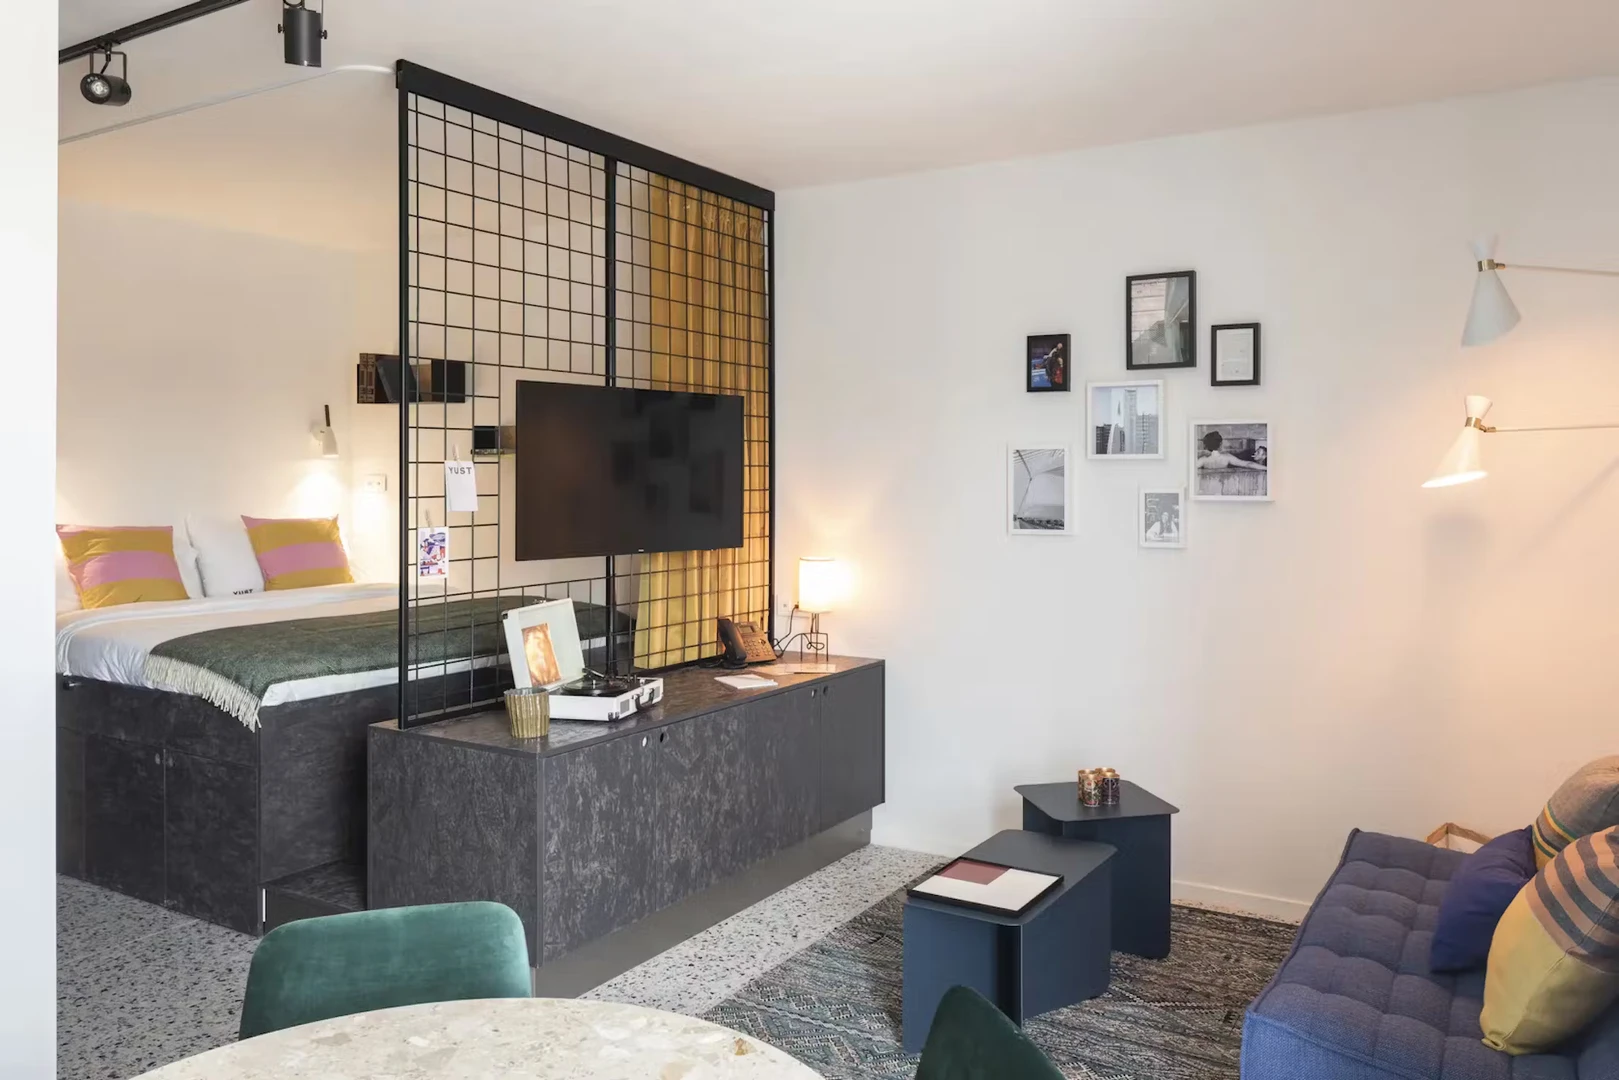 Appartement entièrement meublé à Liège